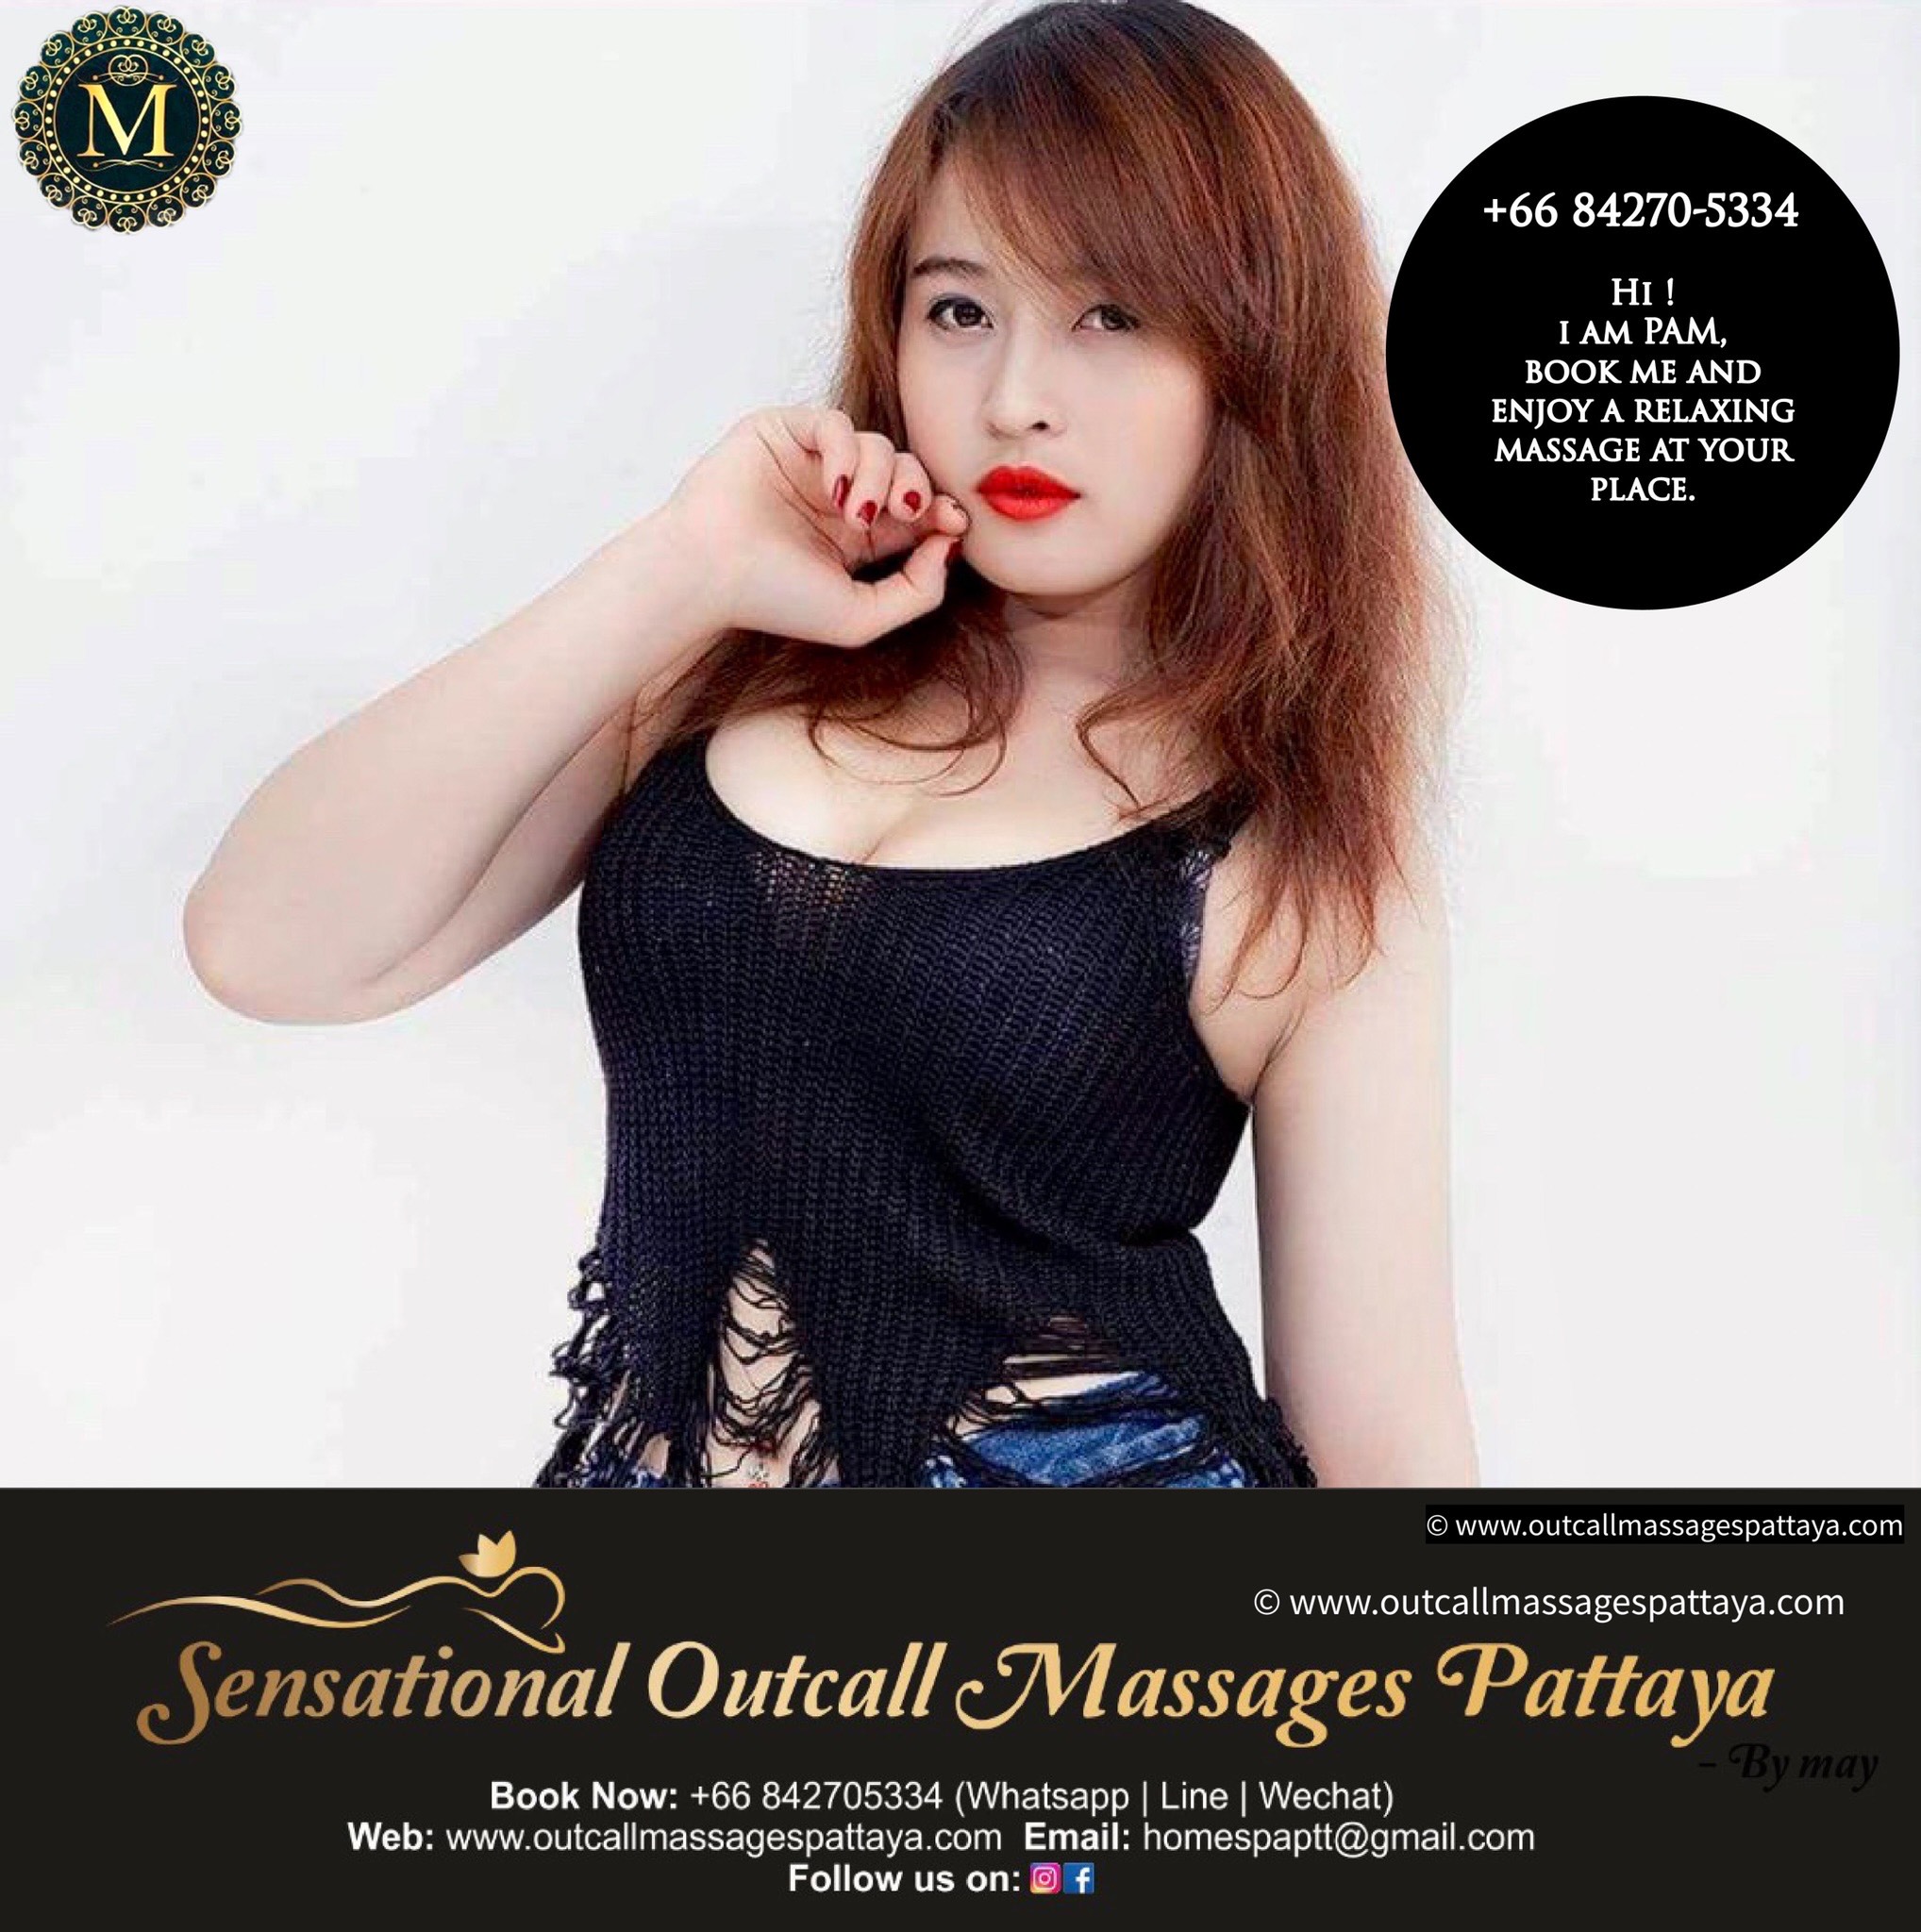 Outcall massage therapist at sensational outcall massage pattaya